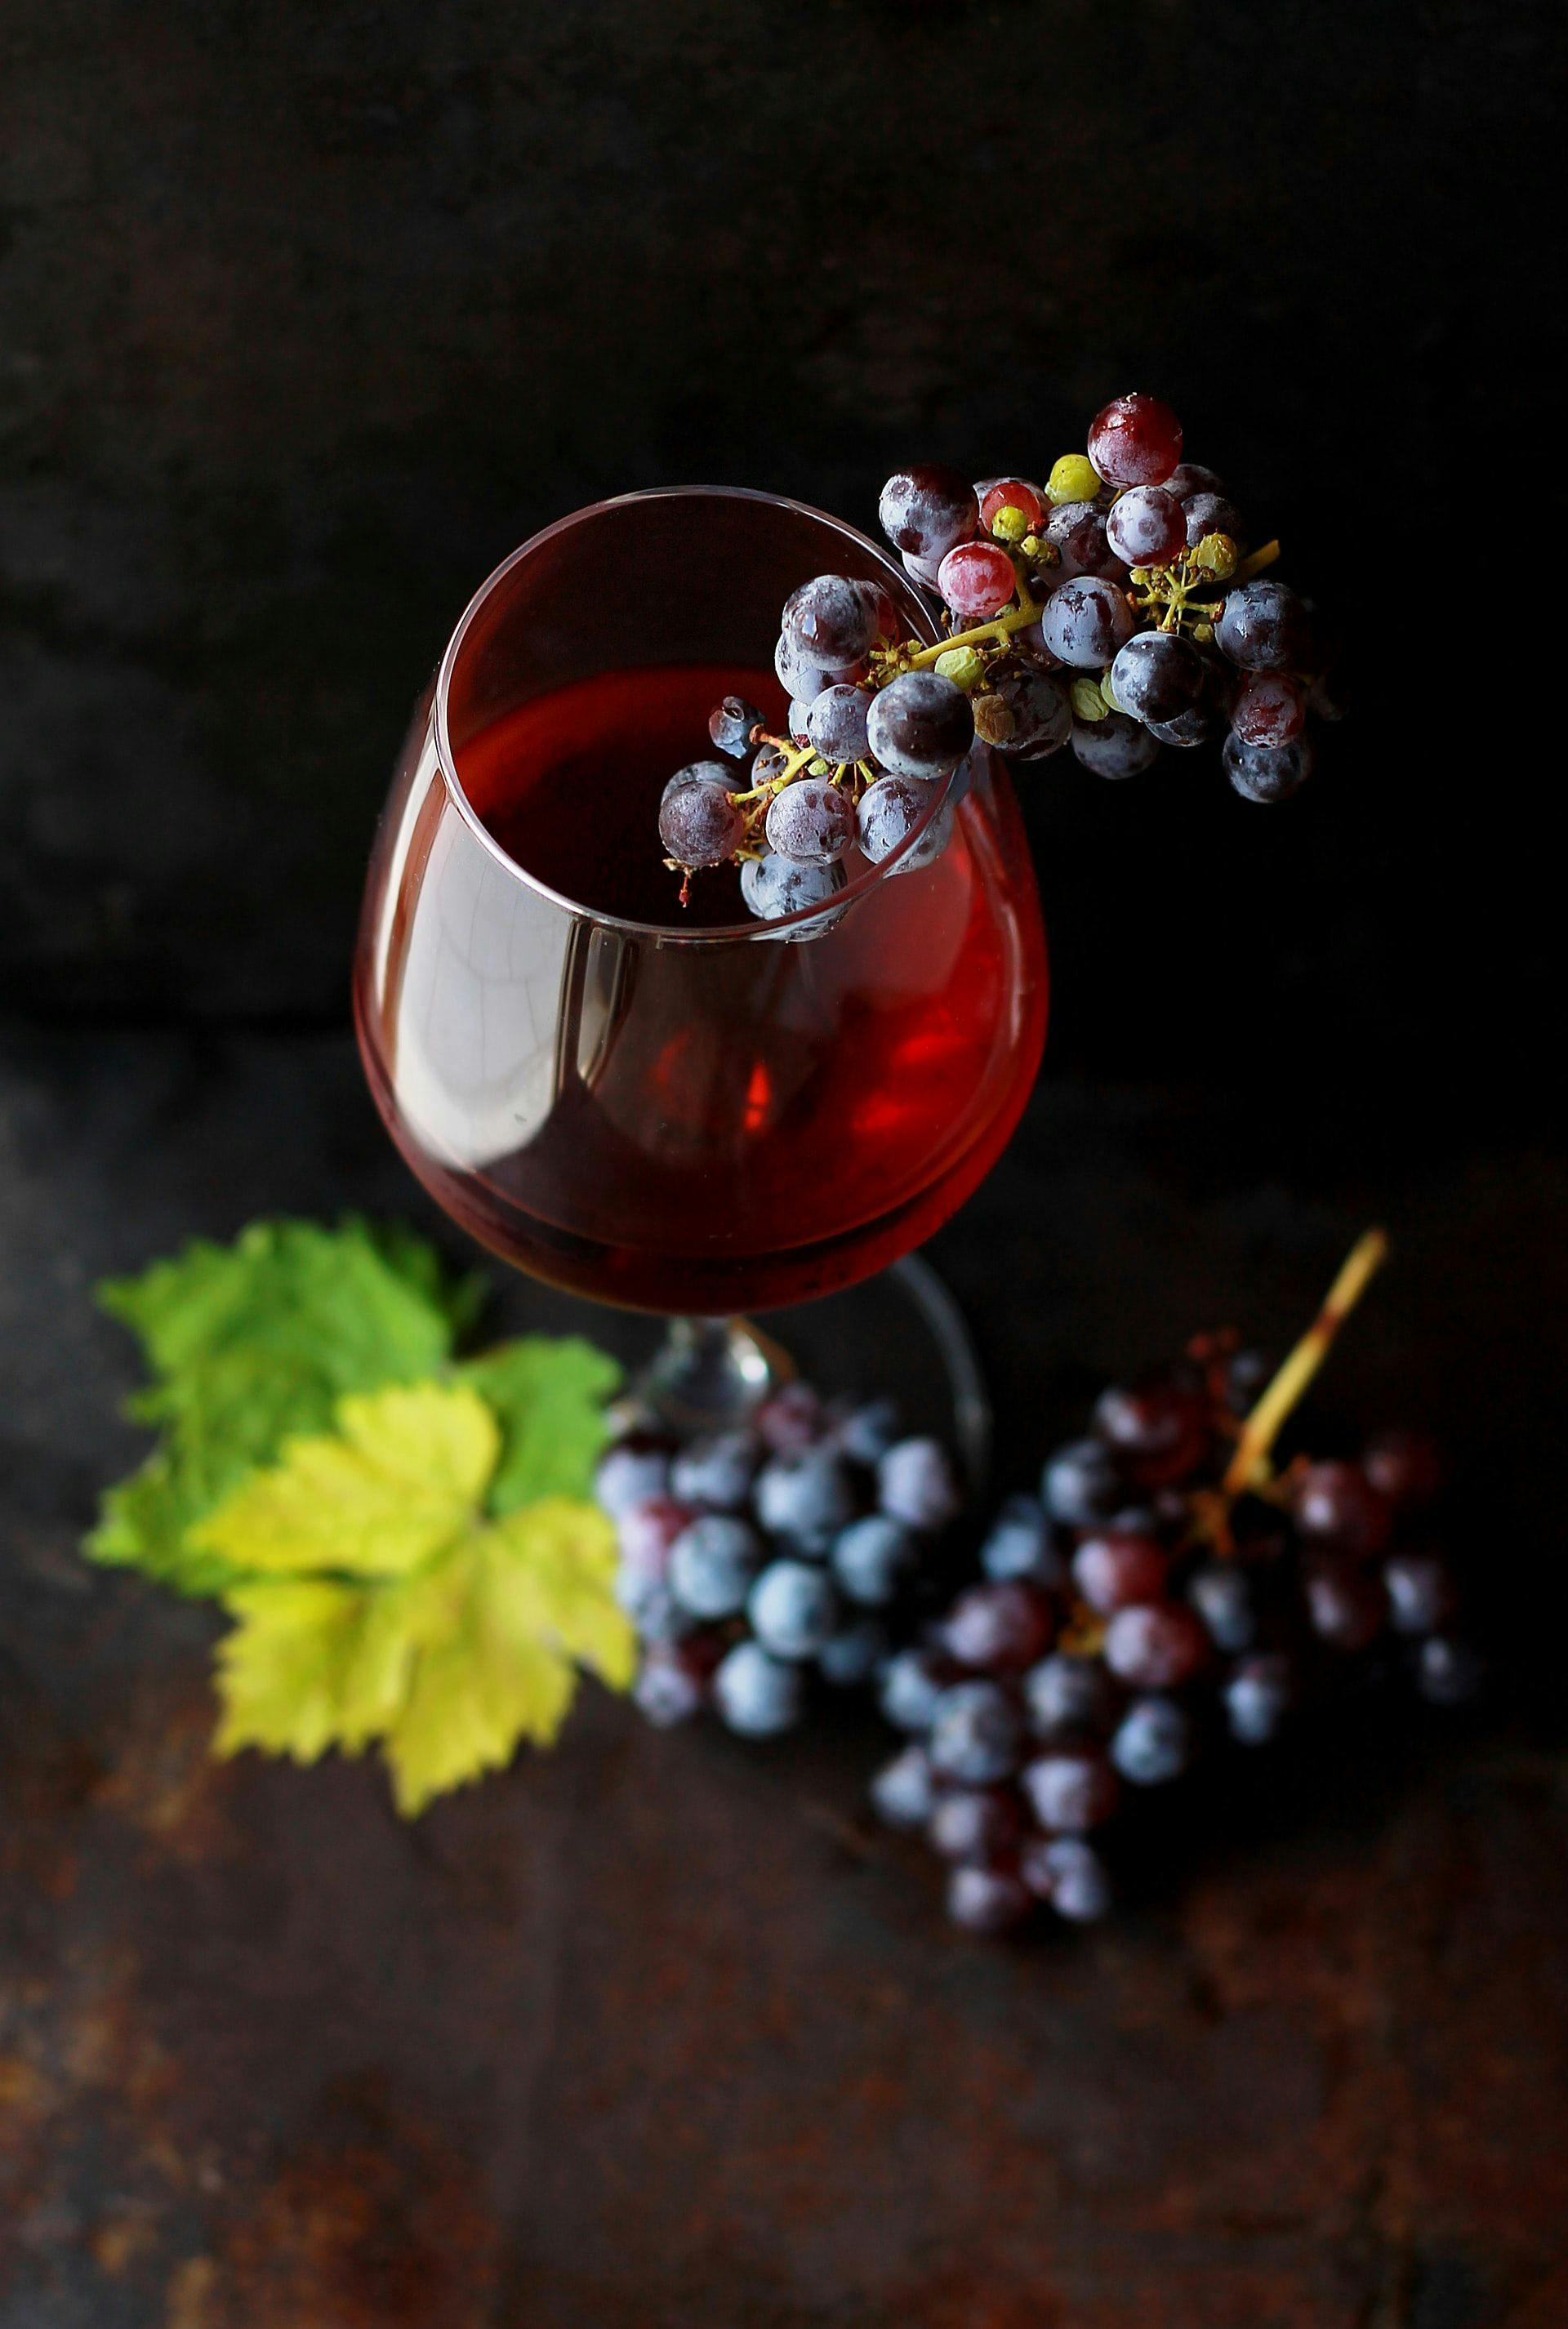 Урожай винограда в Люксембурге соберут уже в начале сентября, страну ждёт отличный сезон для красного вина